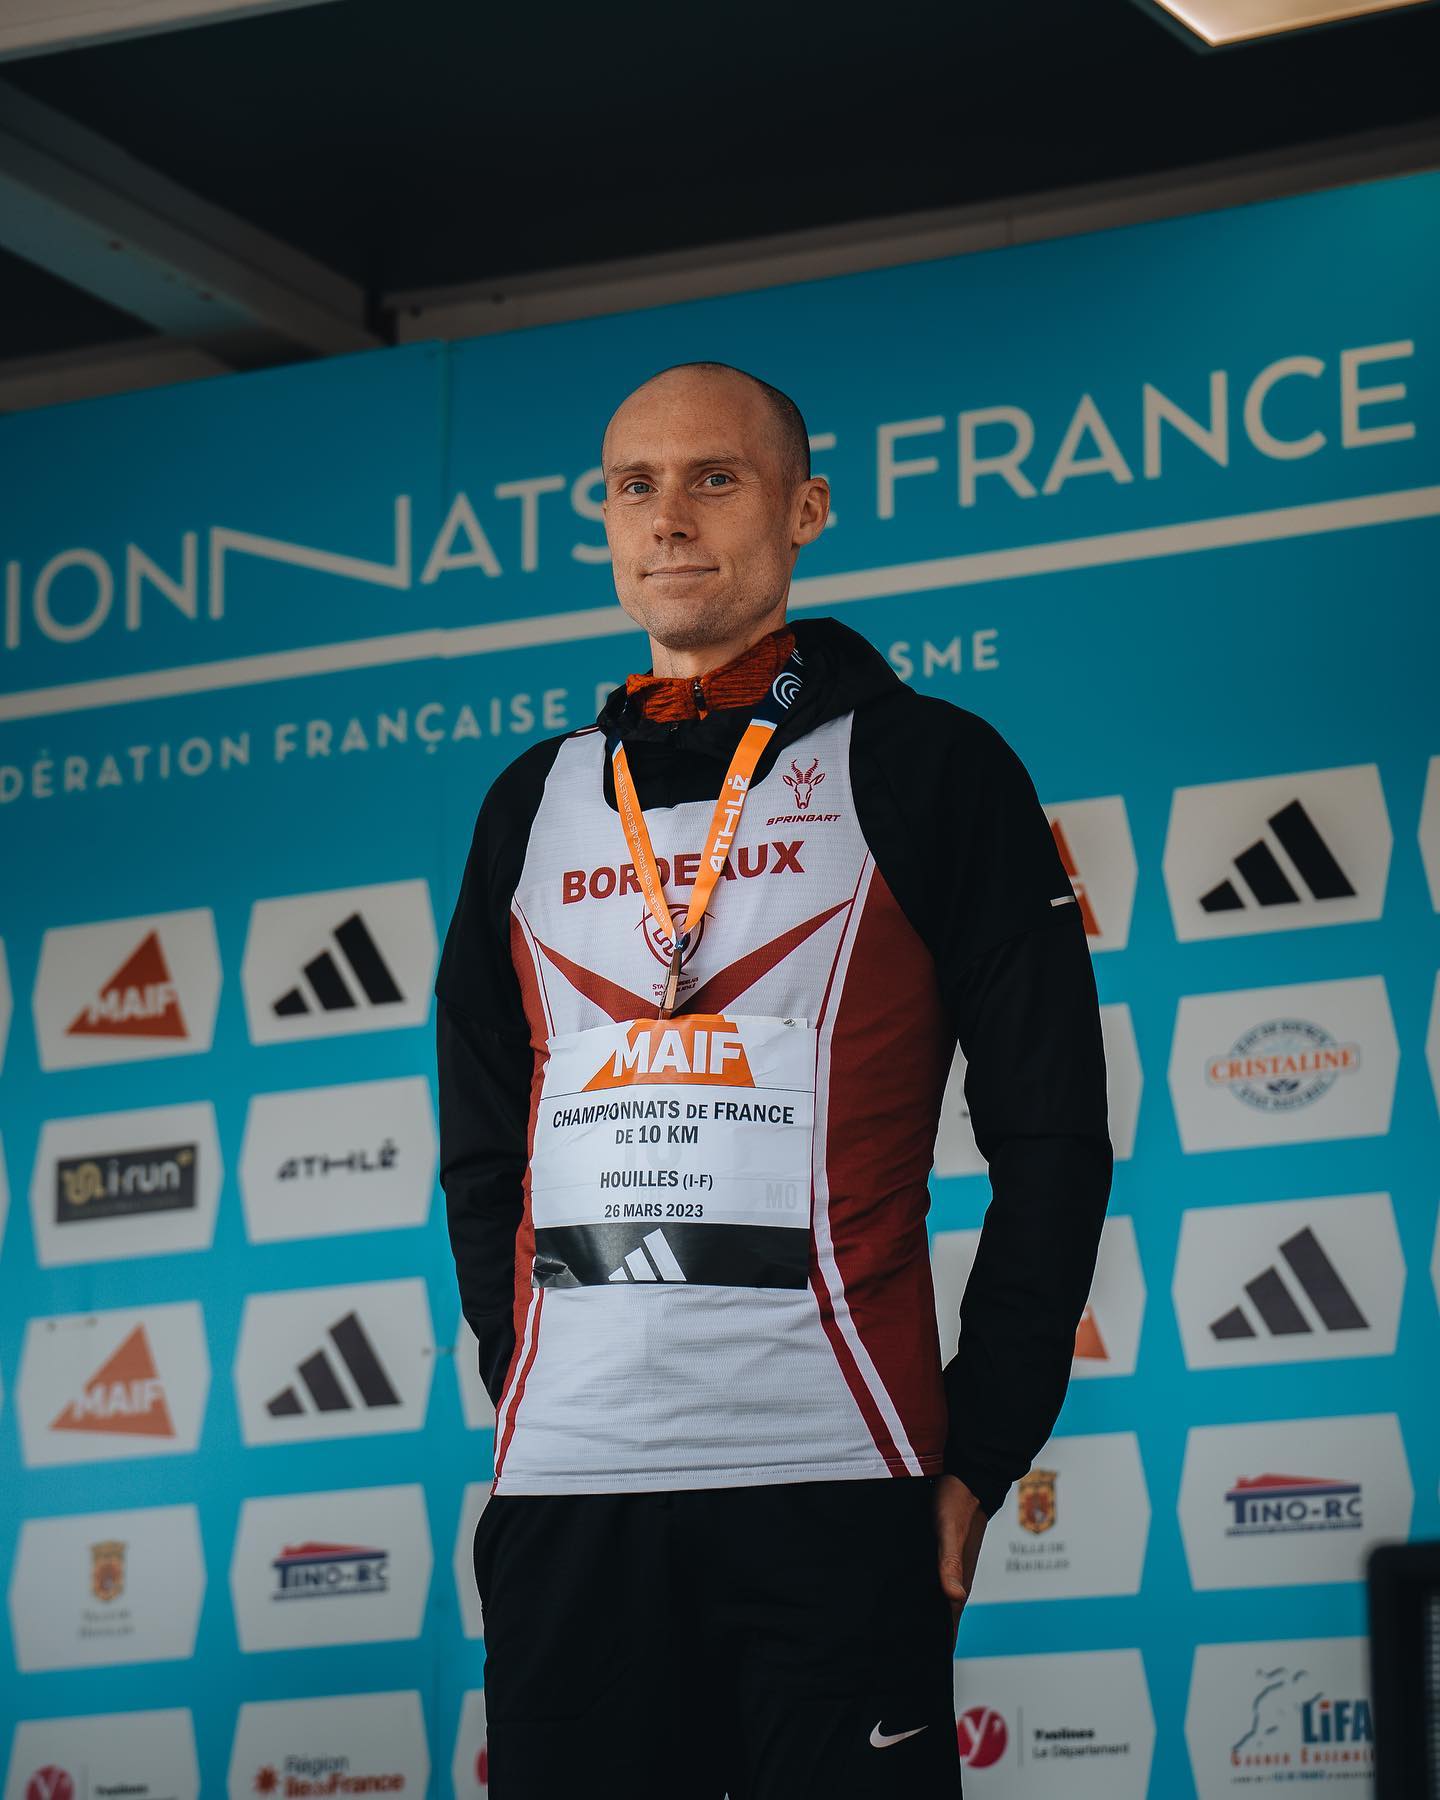 Jeff LASTENNET médaillé de bronze en M0 aux Championnats de France de 10km